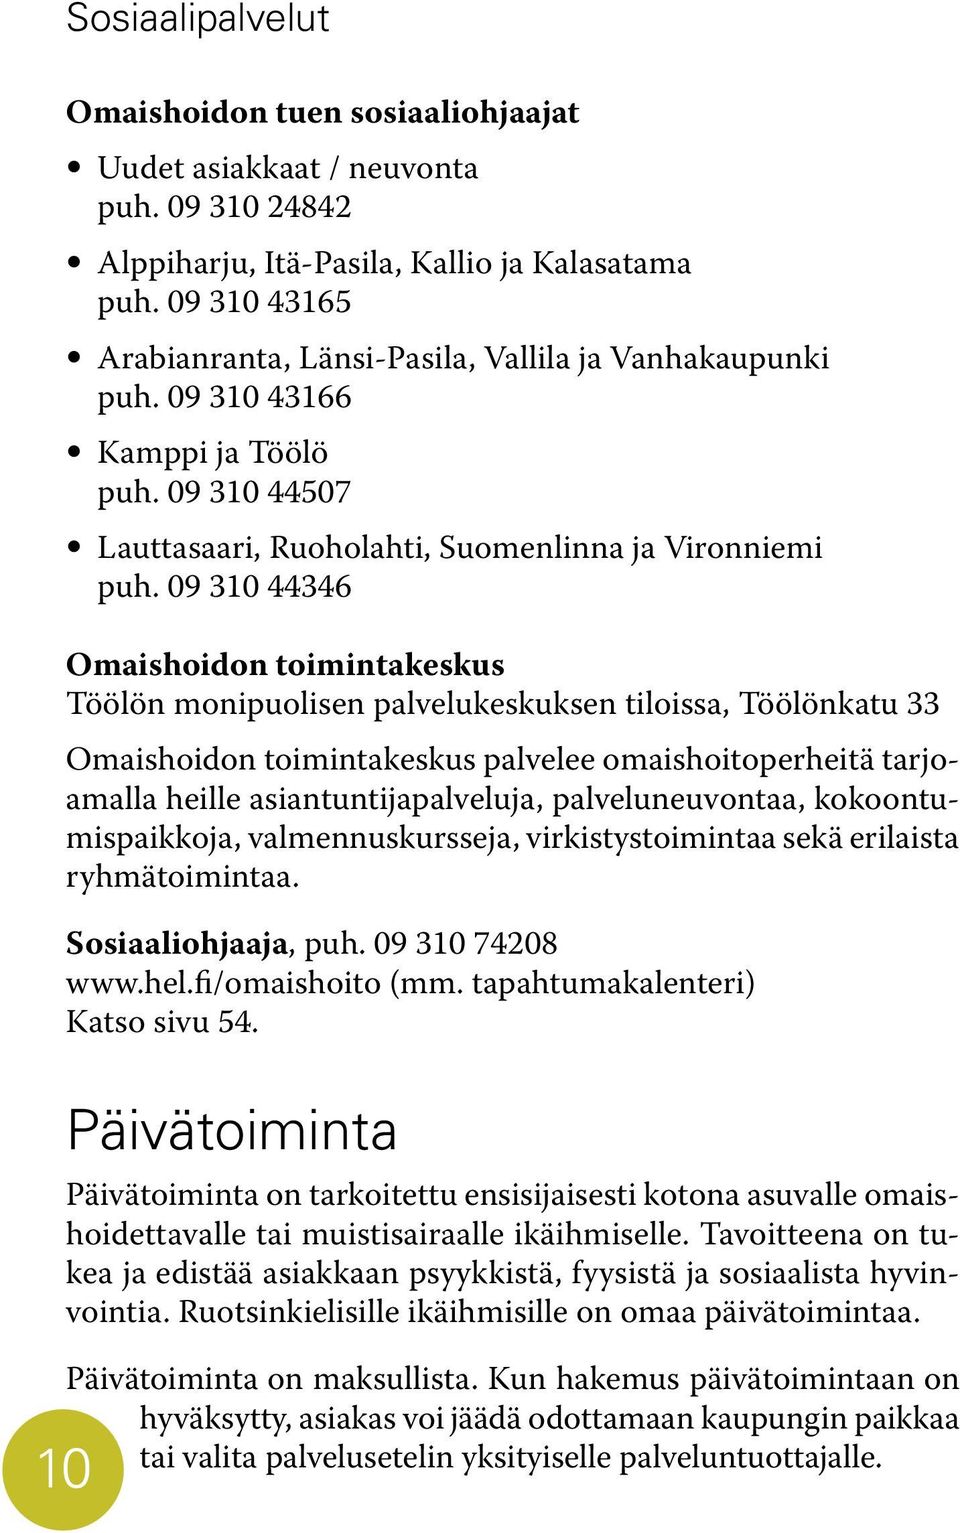 09 310 44346 Omaishoidon toimintakeskus Töölön monipuolisen palvelukeskuksen tiloissa, Töölönkatu 33 Omaishoidon toimintakeskus palvelee omaishoitoperheitä tarjoamalla heille asiantuntijapalveluja,